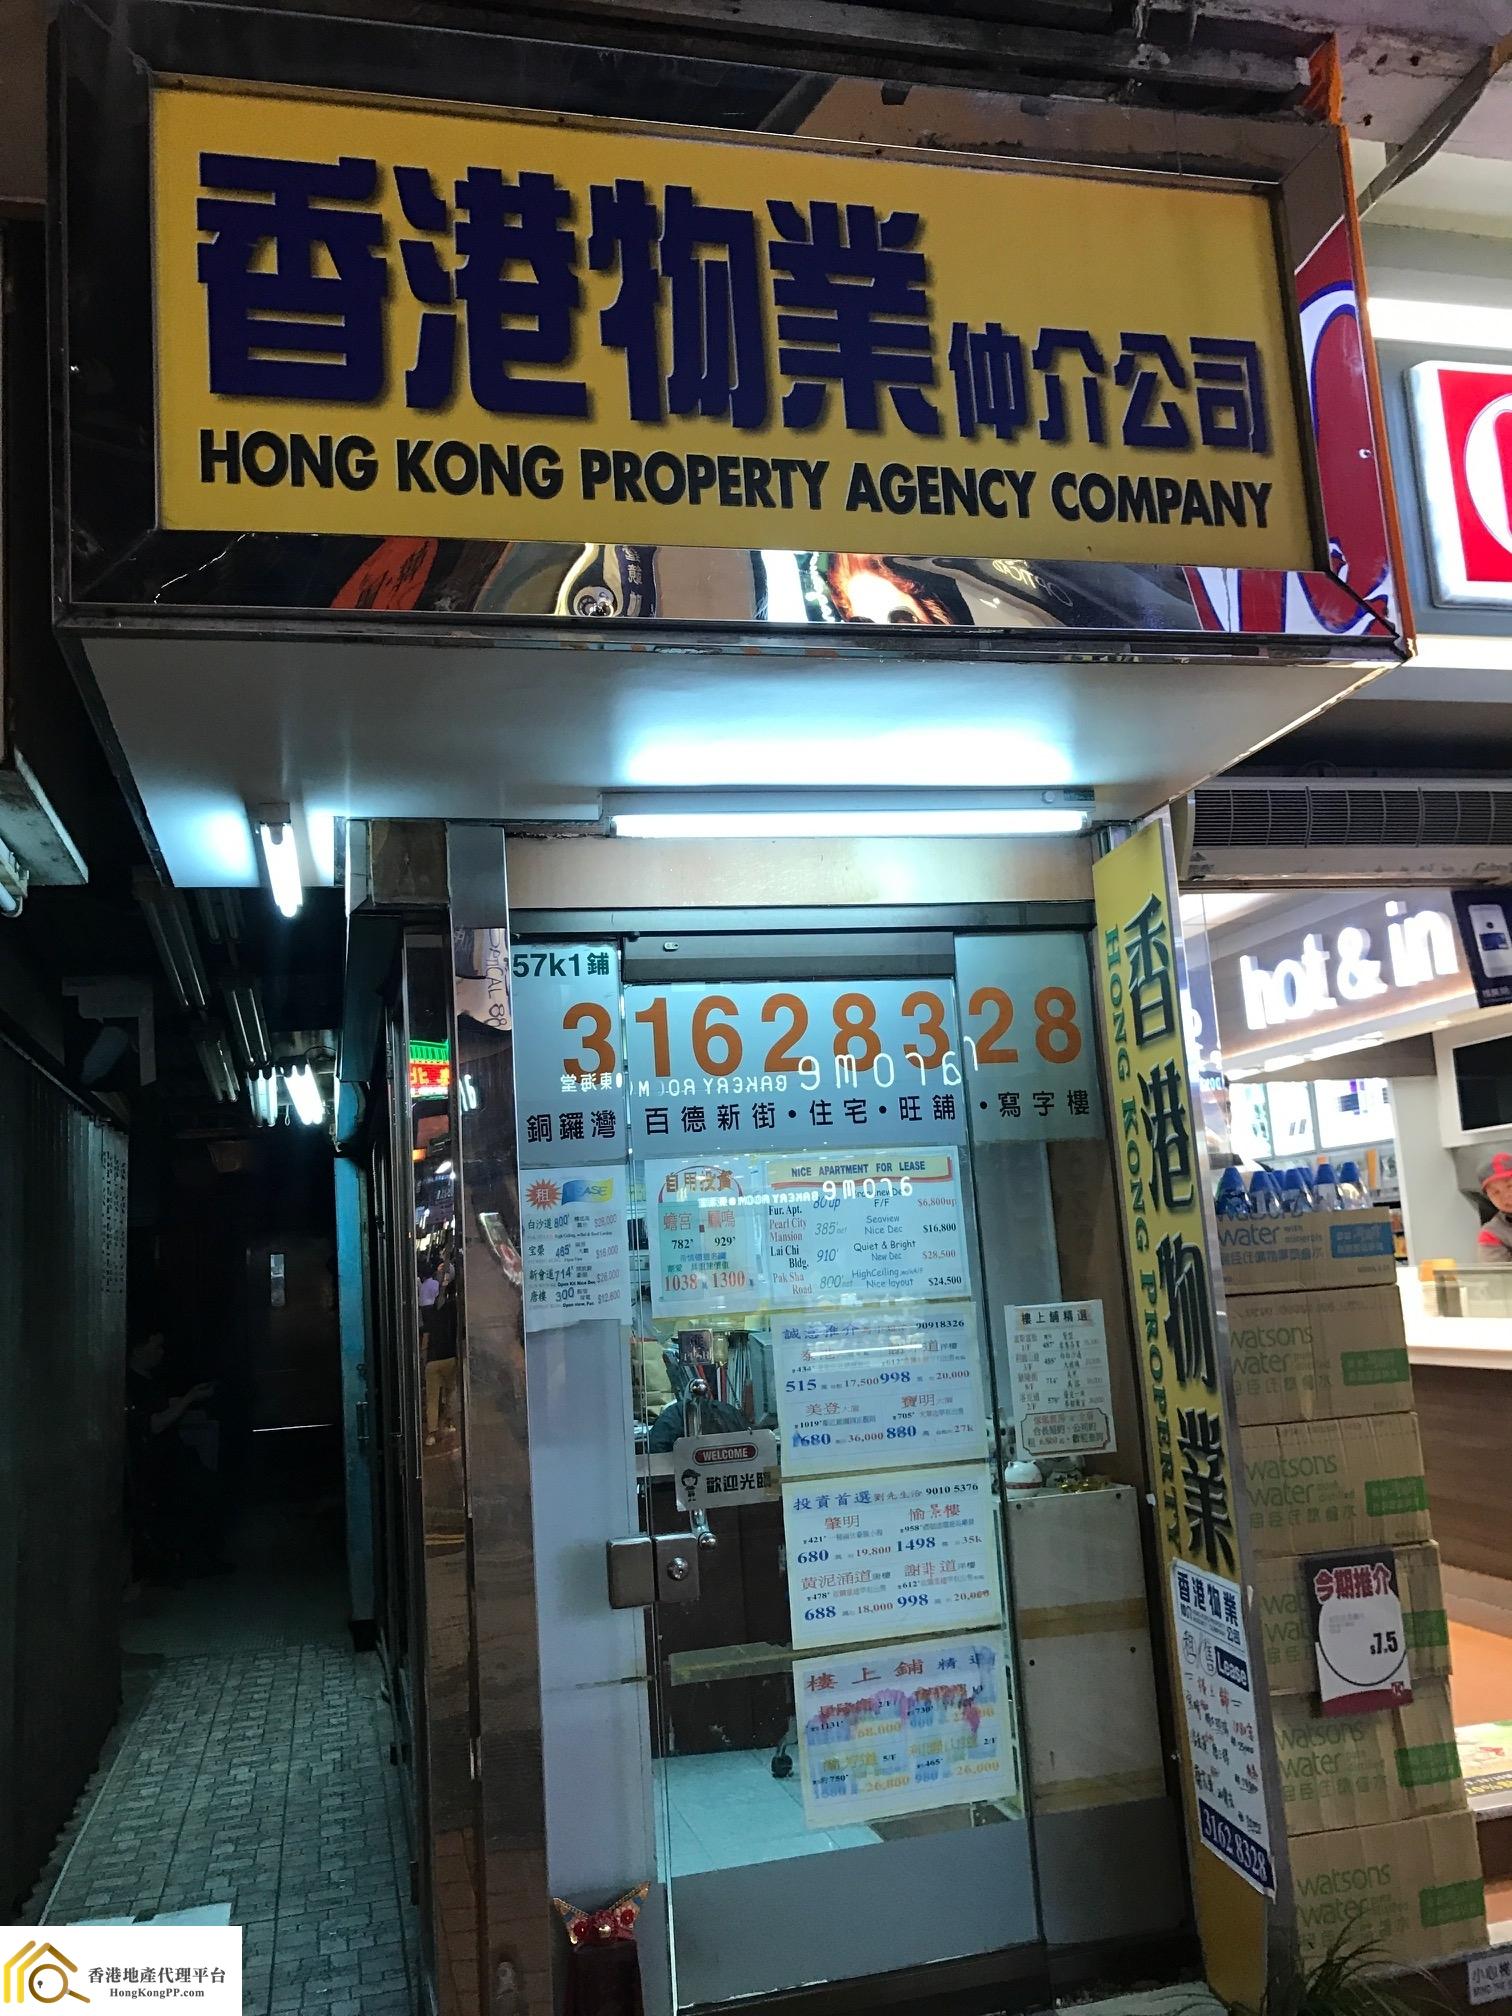 住宅地產代理: 香港物業仲介 Hong Kong Property Agency